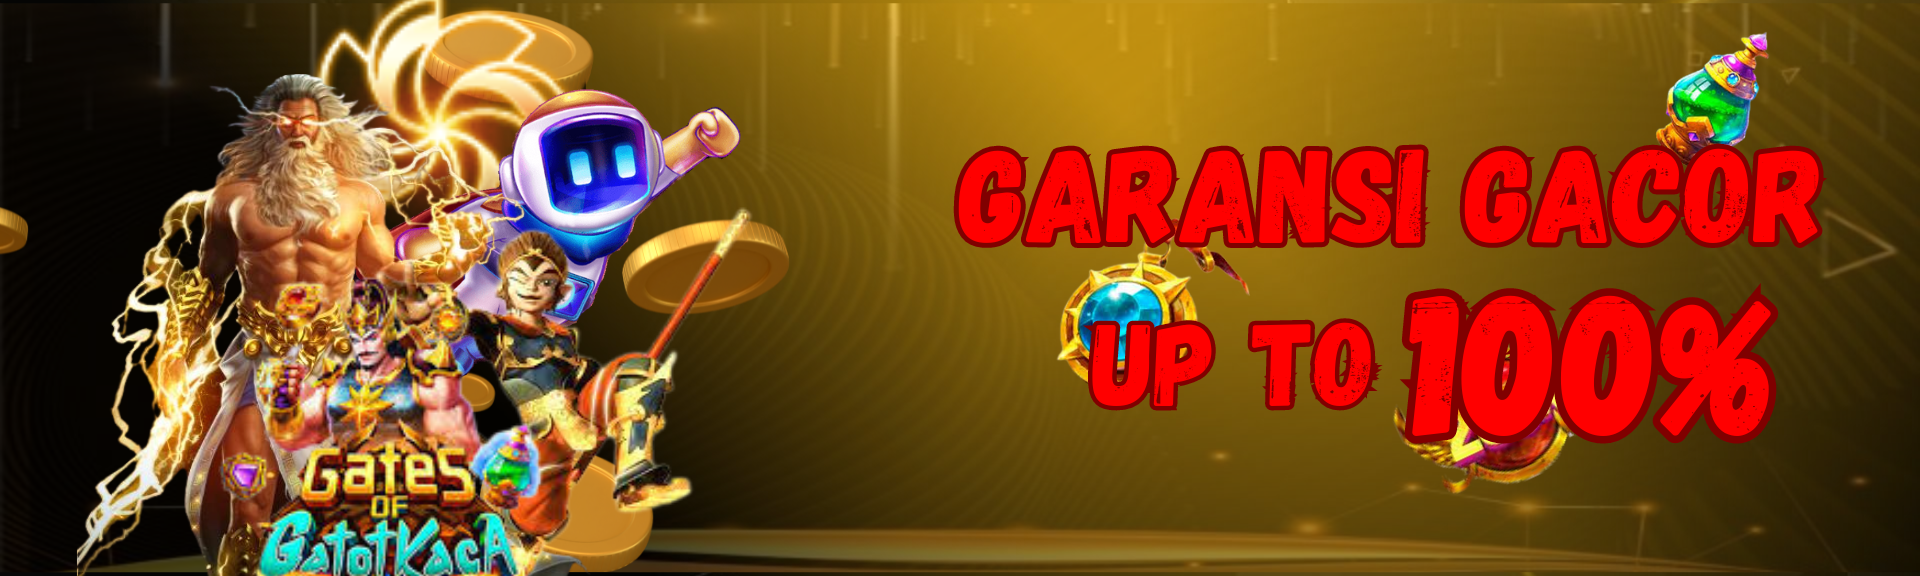 GARANSI GACOR UP TO 100%